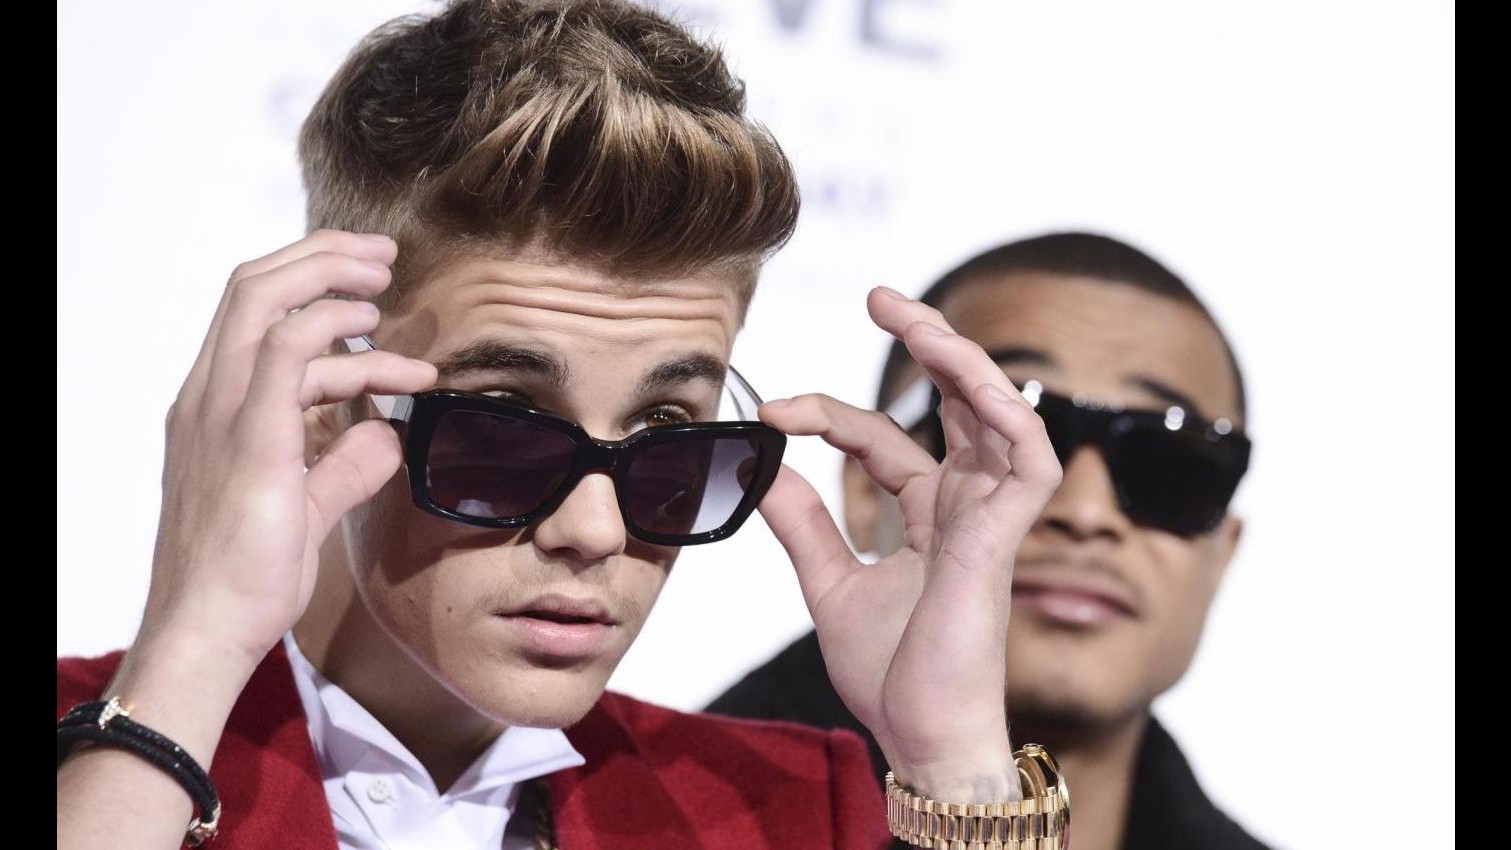 Justin Bieber festeggia vent’anni con 50milioni di follower su Twitter